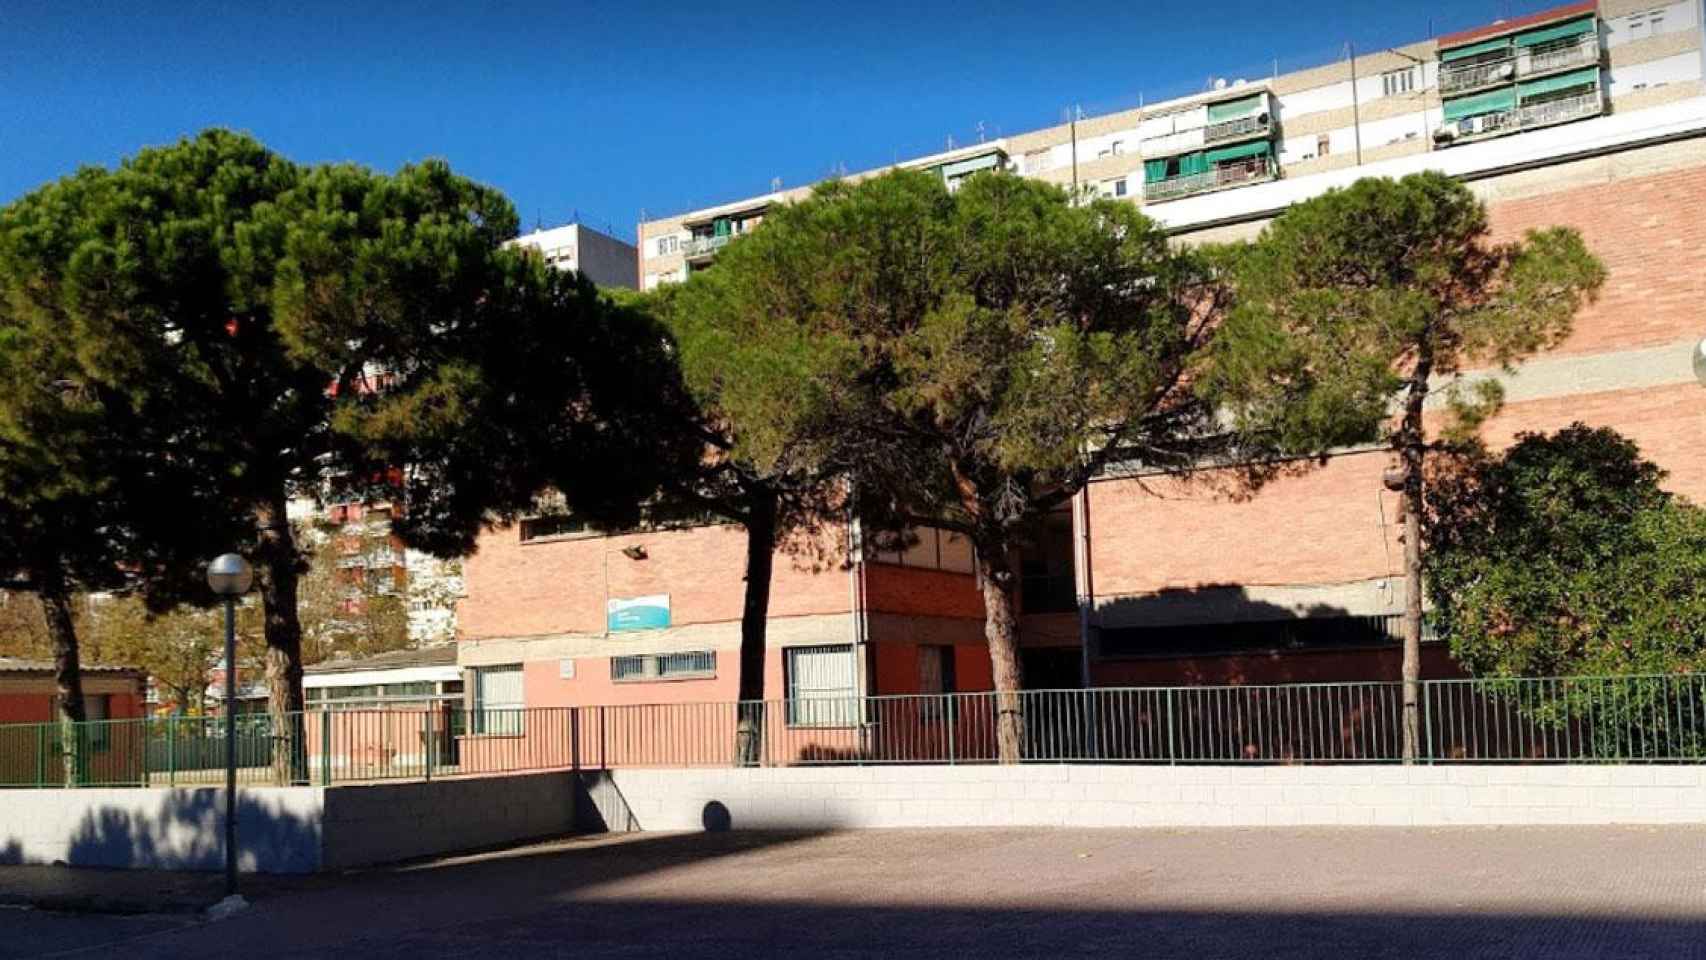 Escola Bernat Metge de L’Hospitalet de Llobregat, el colegio público que cargó contra un diputado del PSC en redes sociales / GOOGLE MAPS